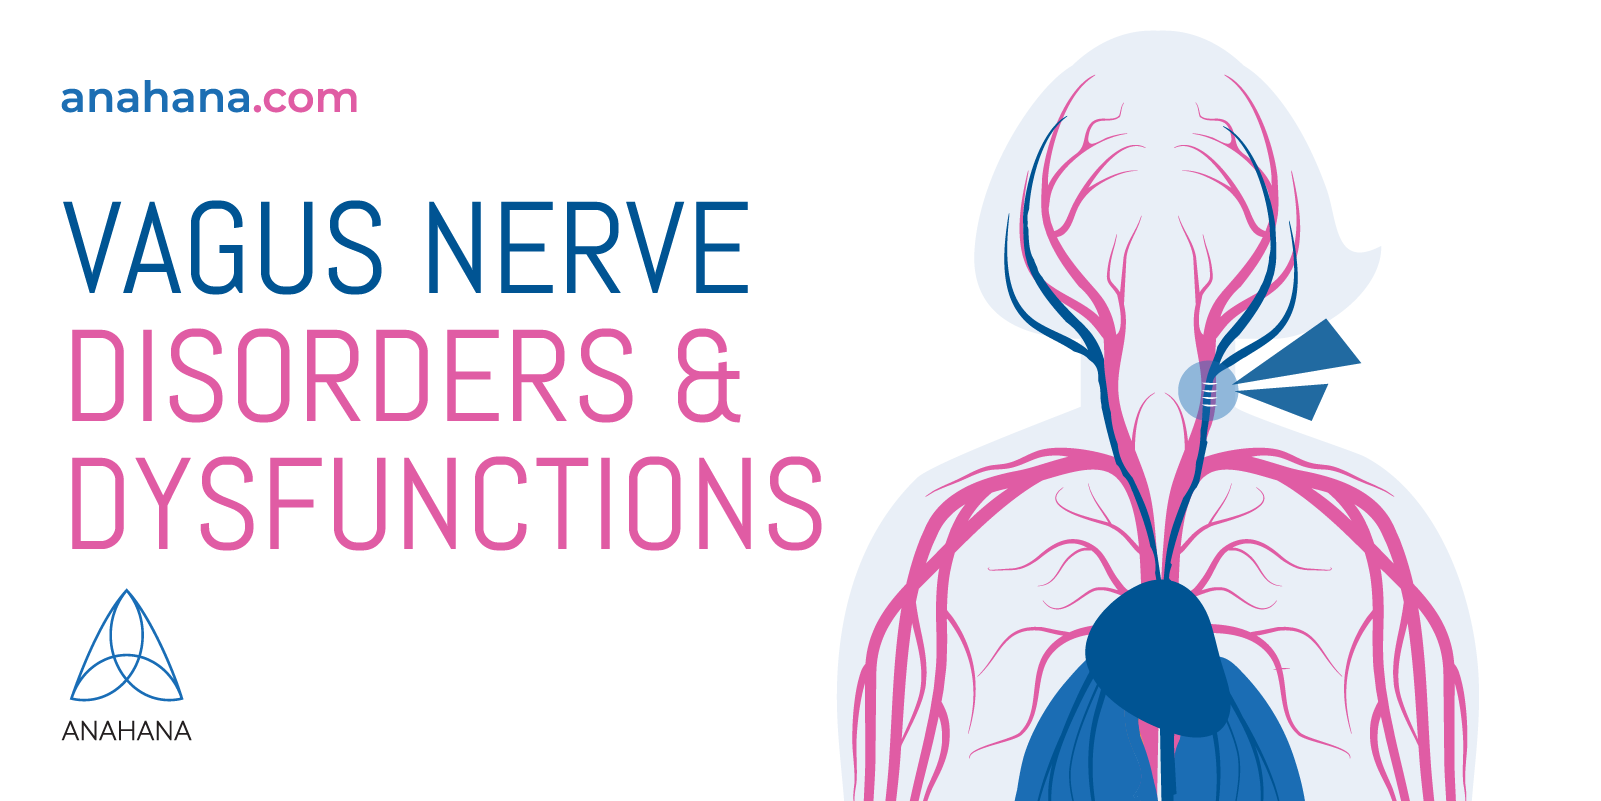 diferentes disfunções e distúrbios dos nervos vagos